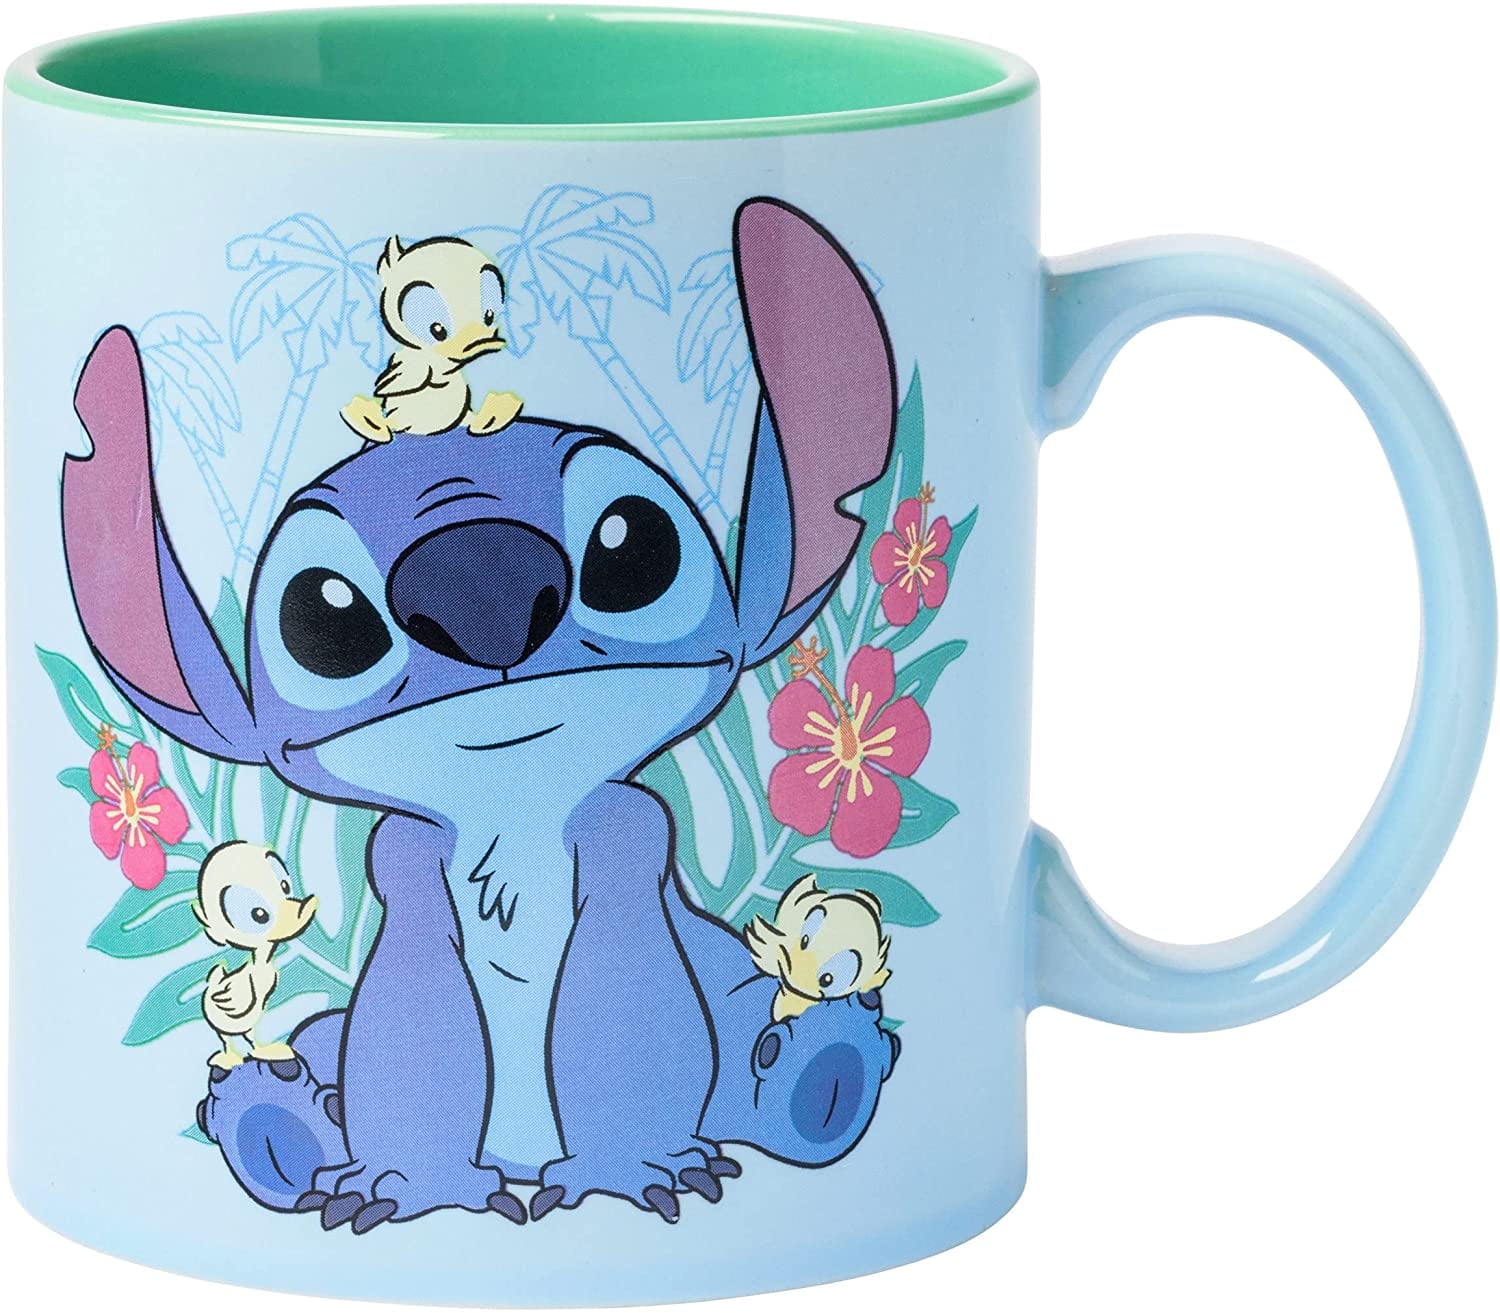 Disney Lilo and Stitch 3D Mug 12 oz, Size: One size, Blue